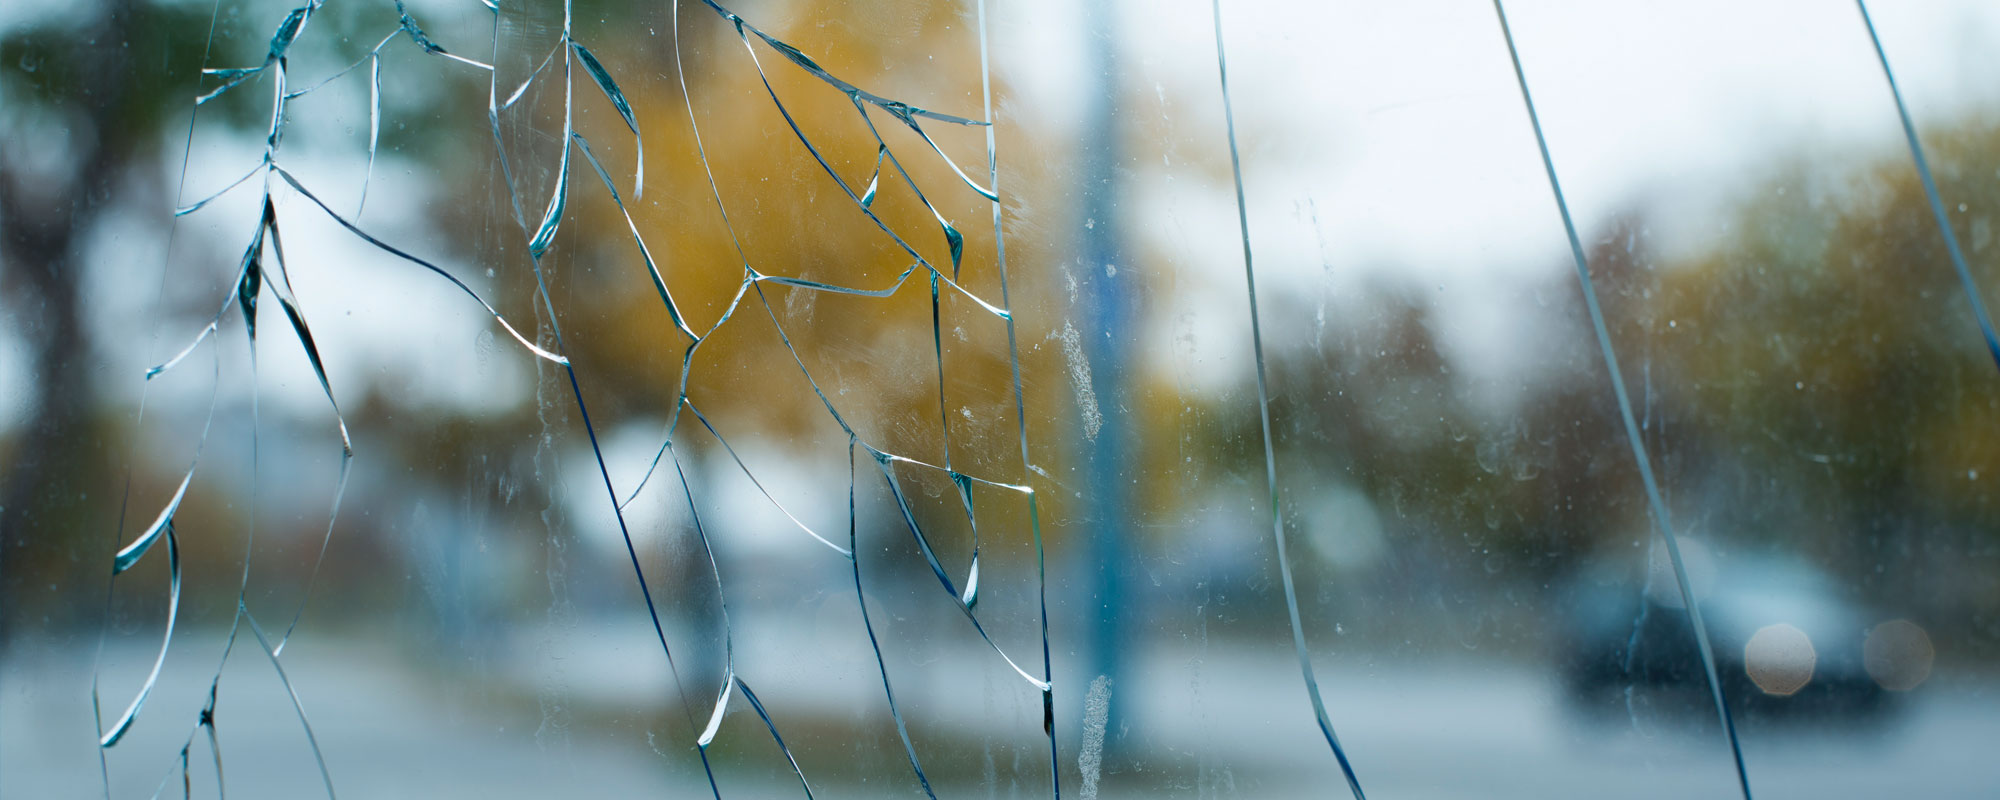 Comment diminuer les risques de bris thermique du vitrage de vos fenêtres?